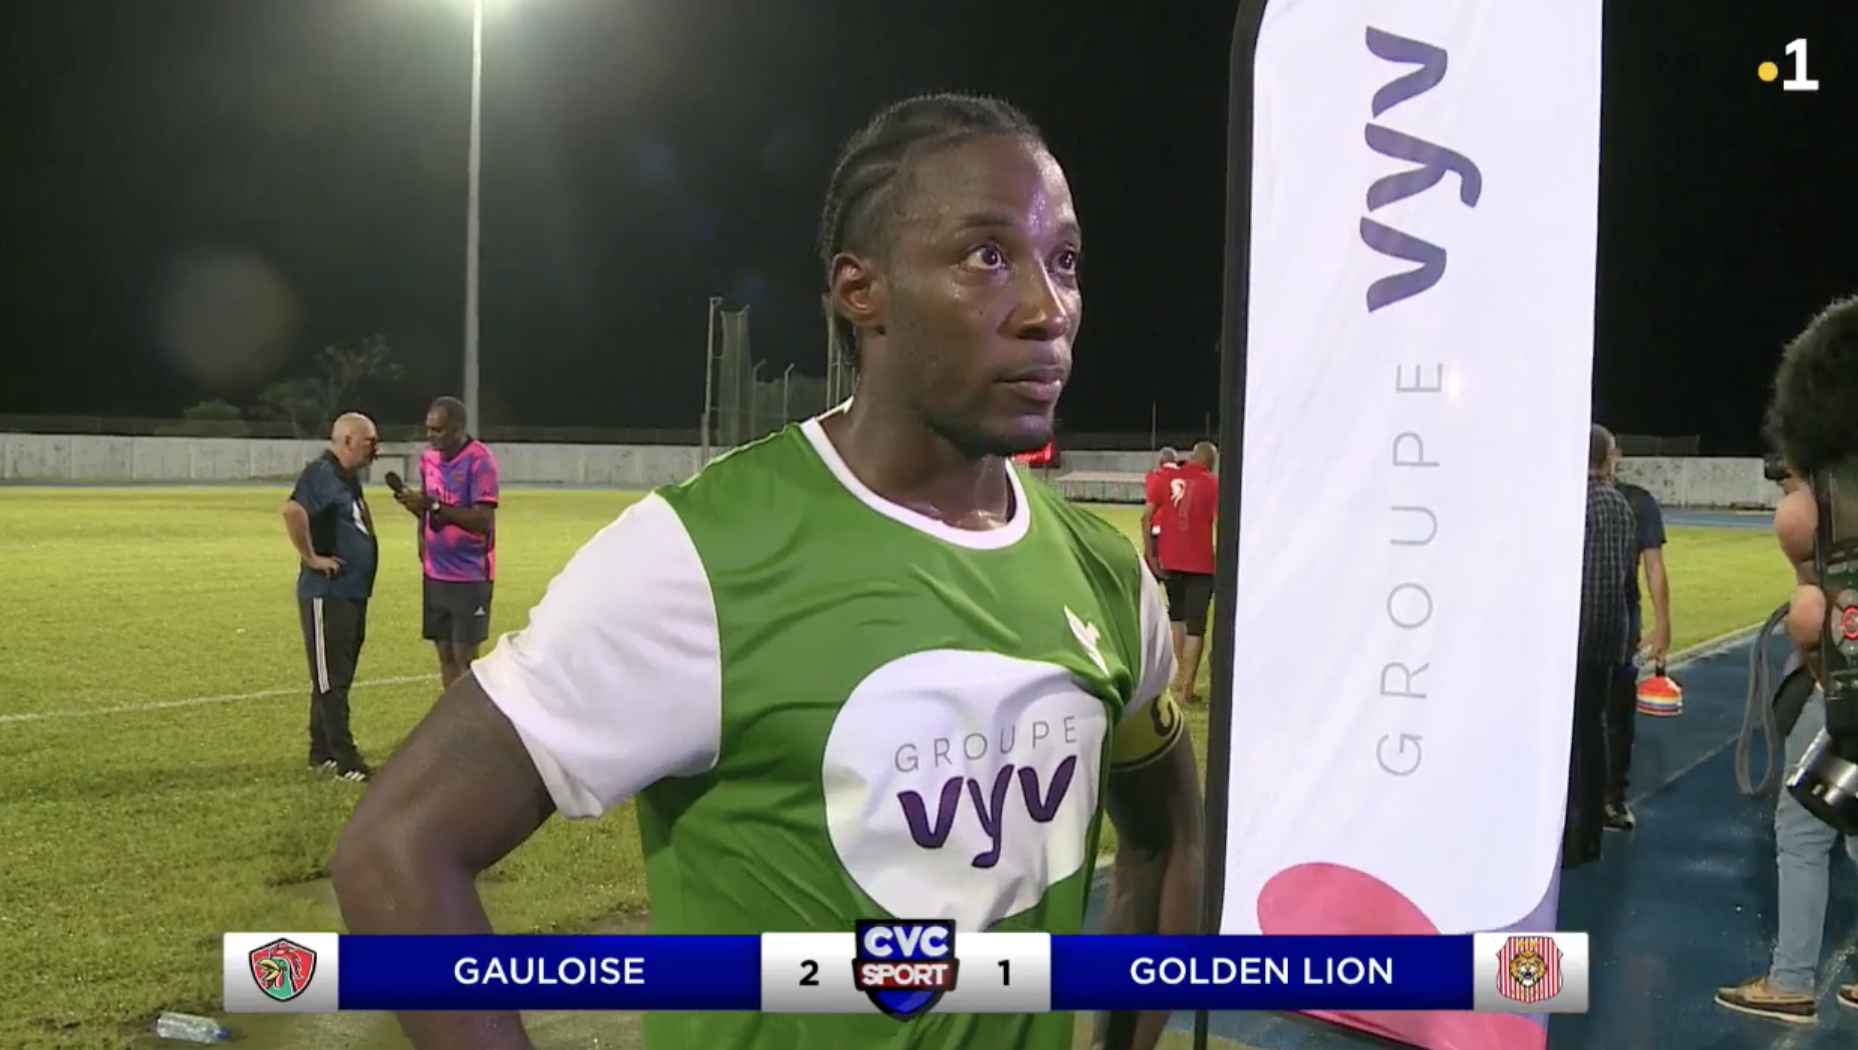     Coupe Vyv : la Gauloise de Basse-Terre bat le Golden Lion et accède en finale 

